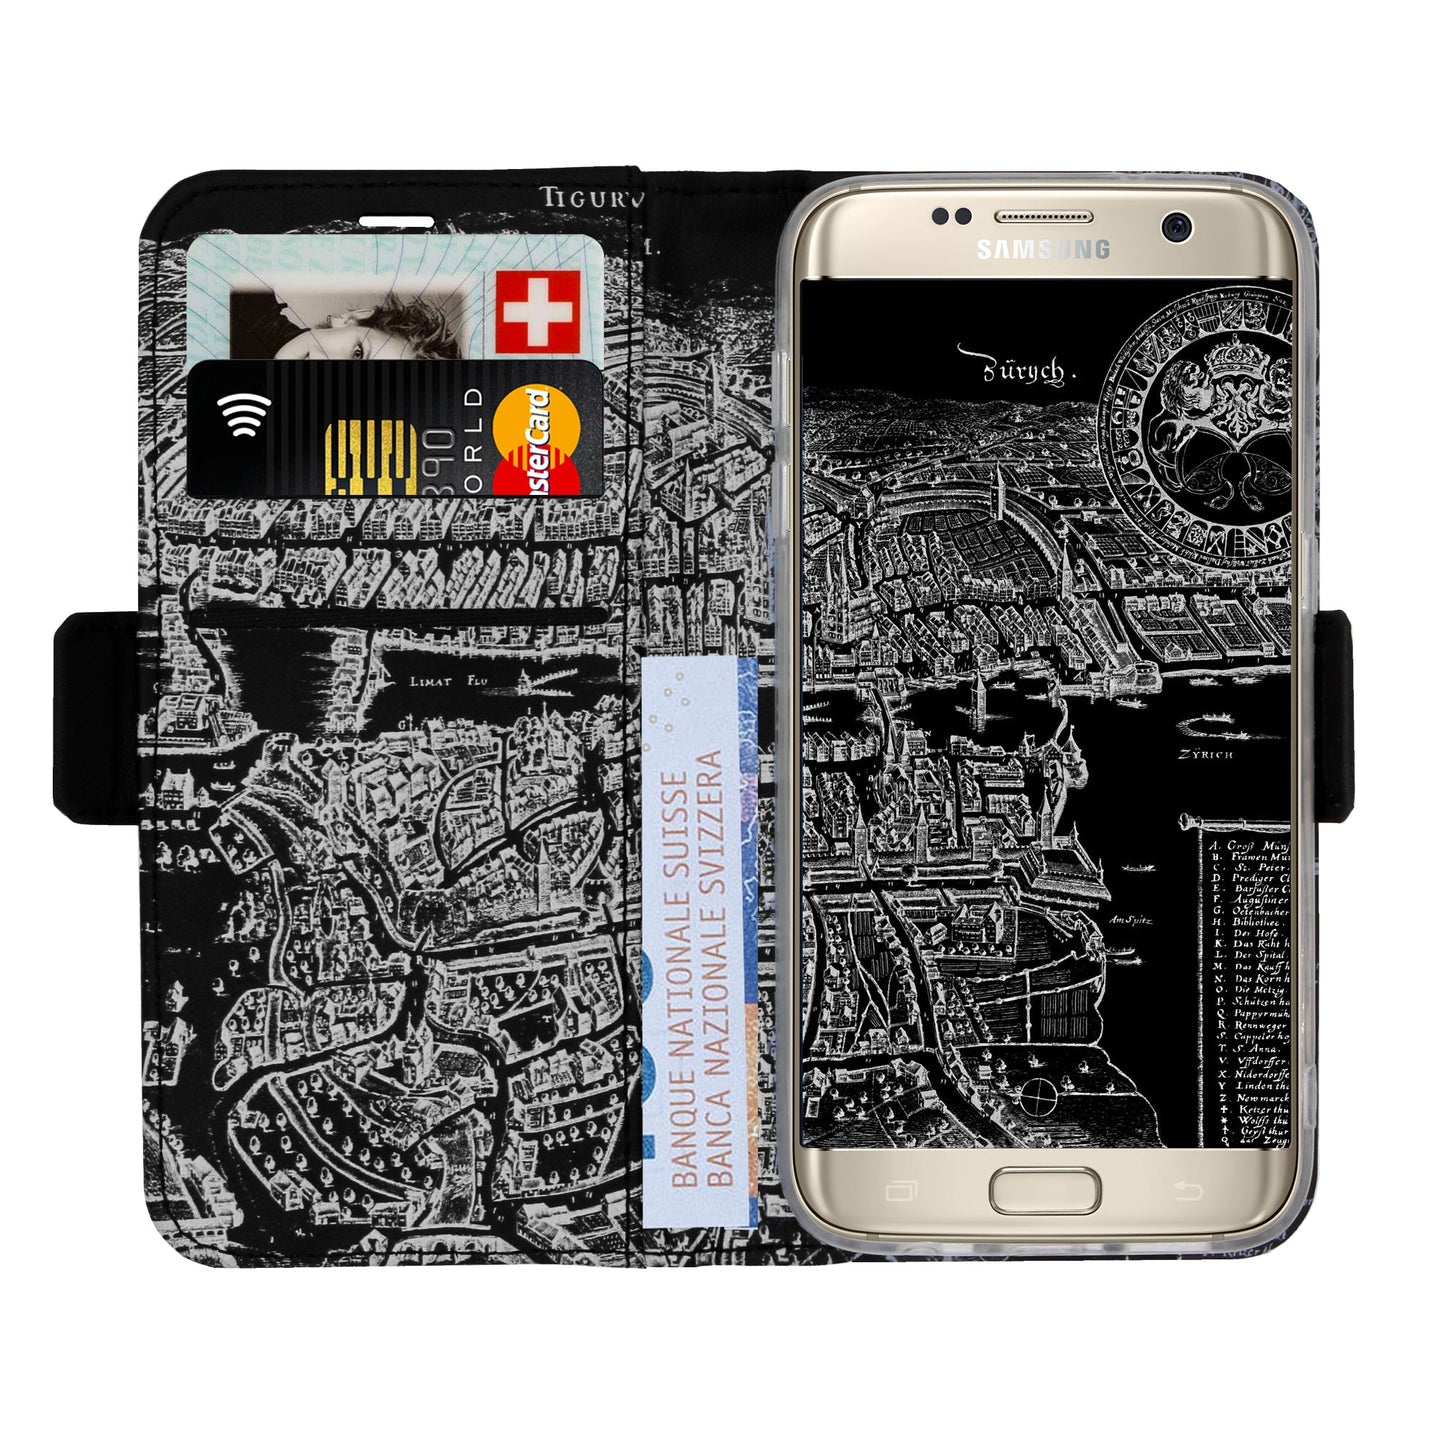 Zurich Merian Negative Victor Case for Samsung Galaxy S7